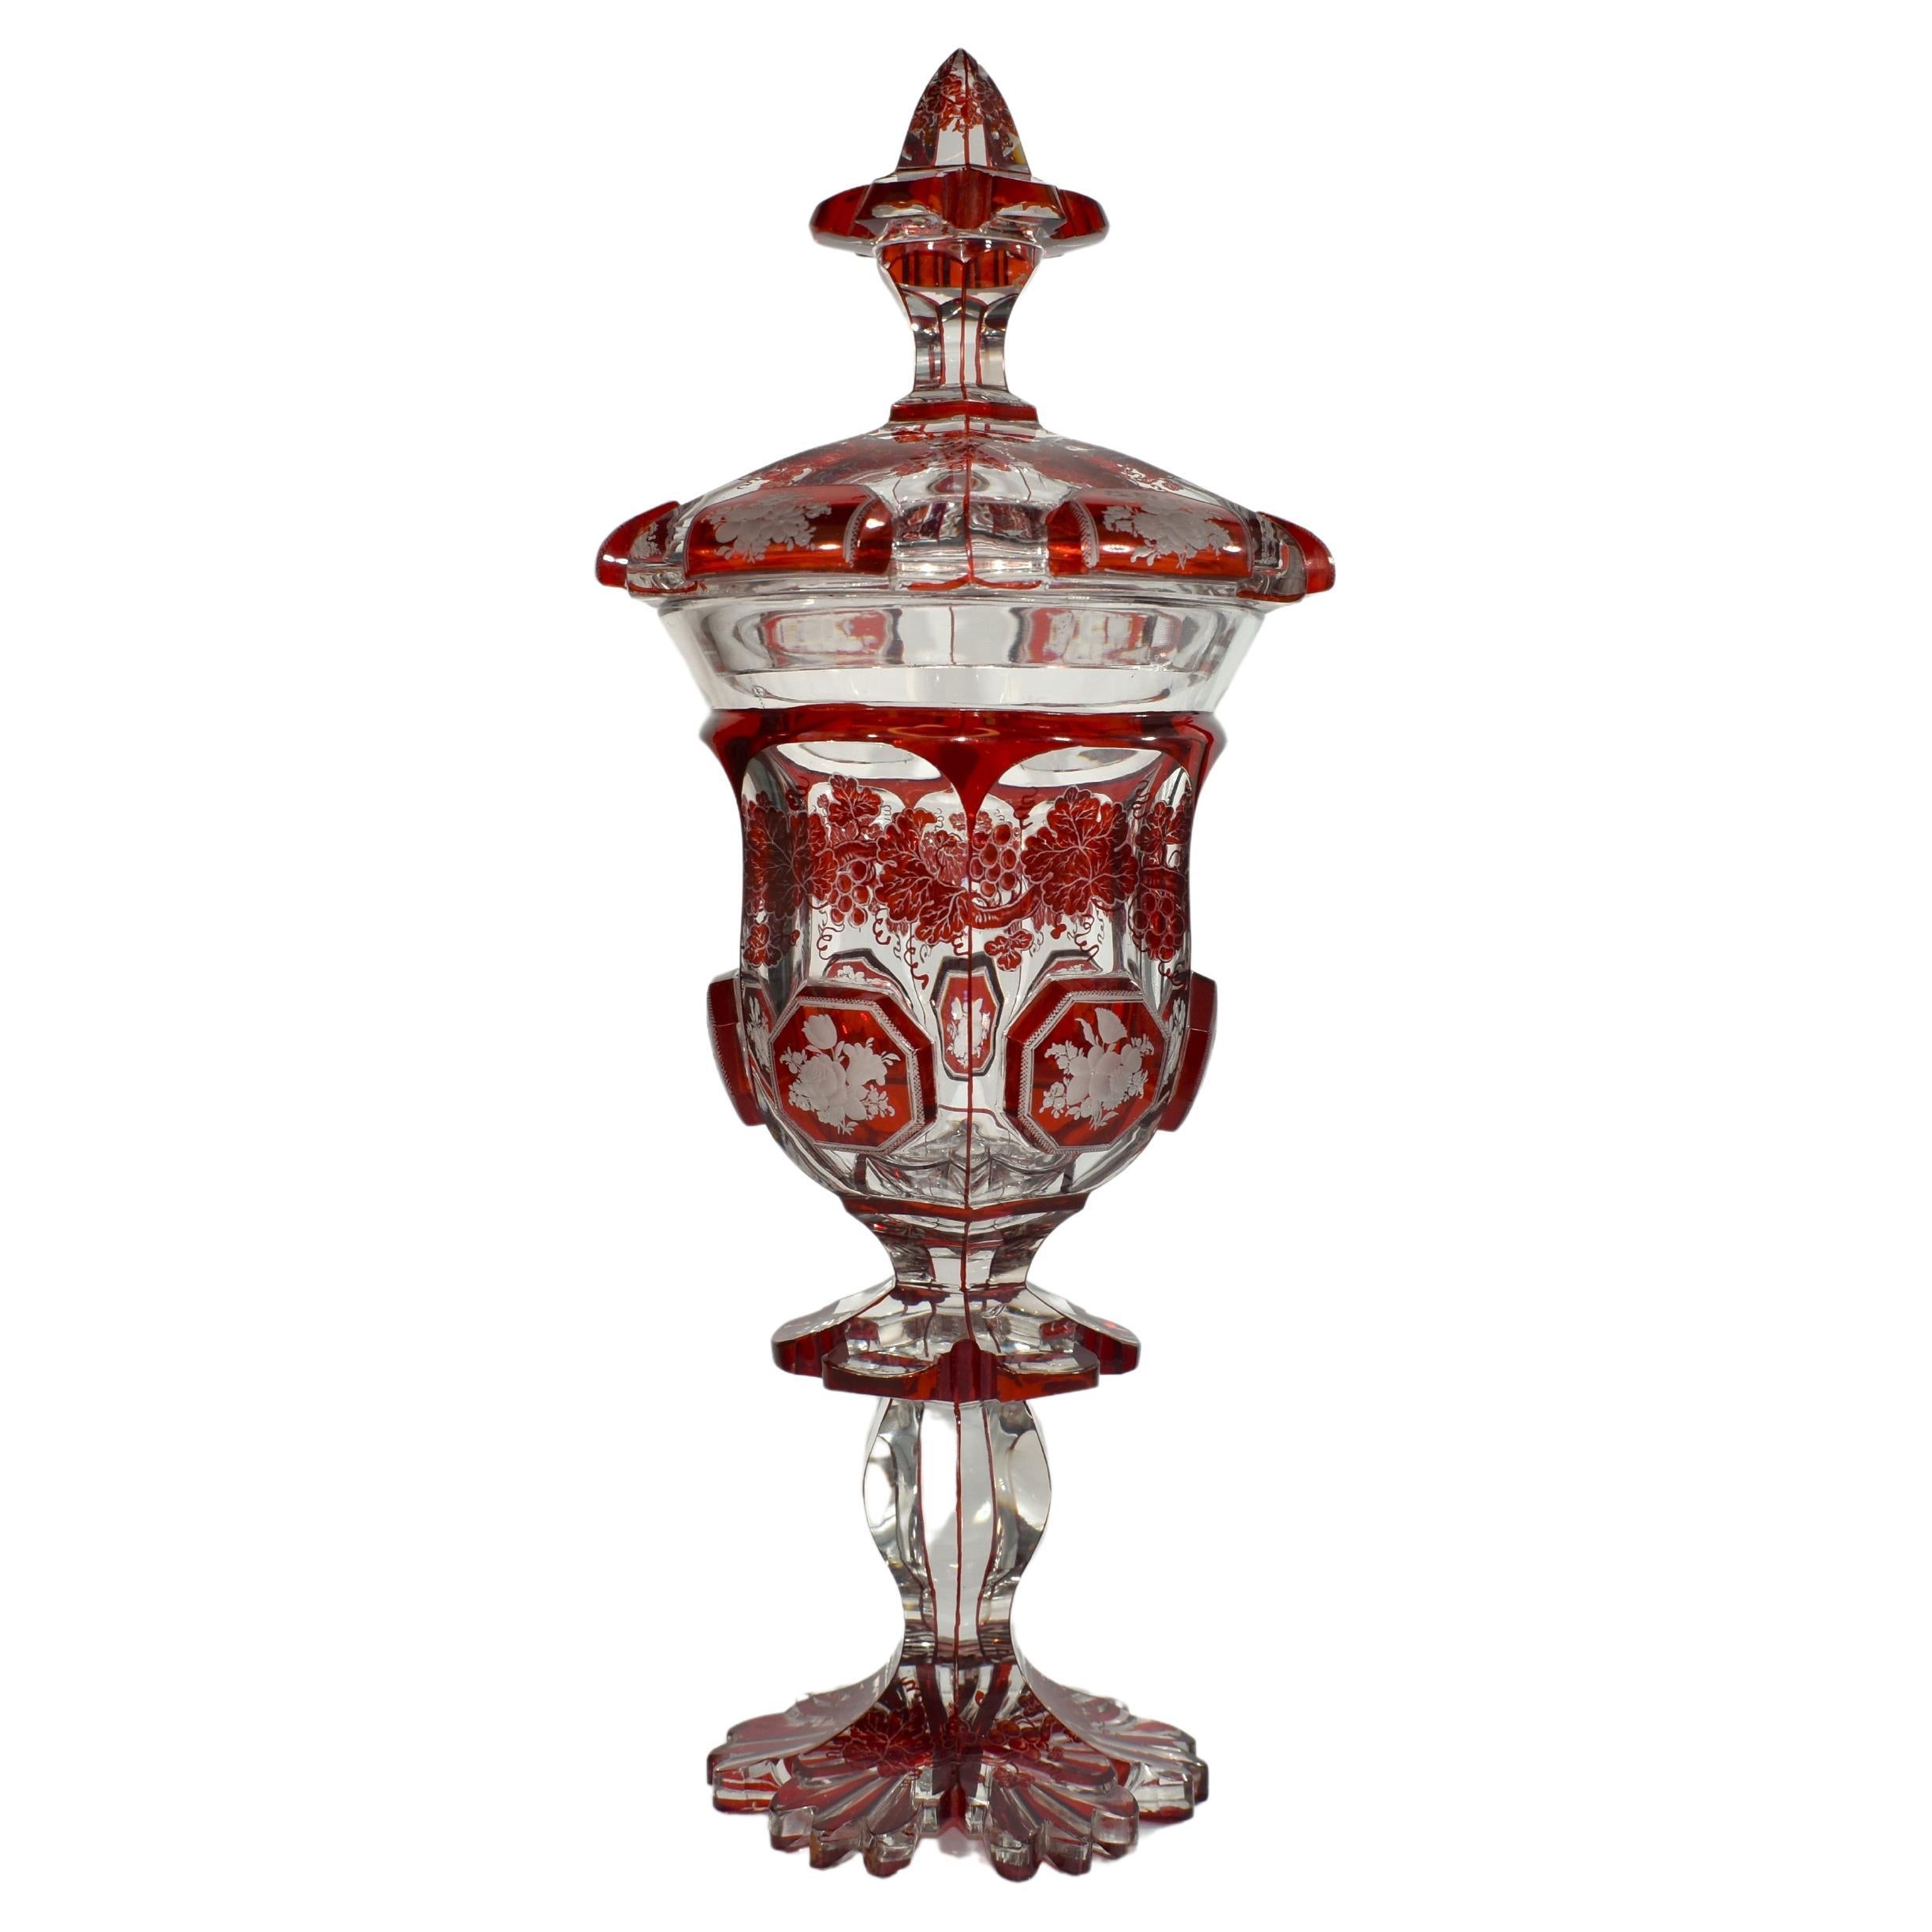 Antique gobelet de Bohème en verre gravé rouge rubis et transparent, 19ème siècle